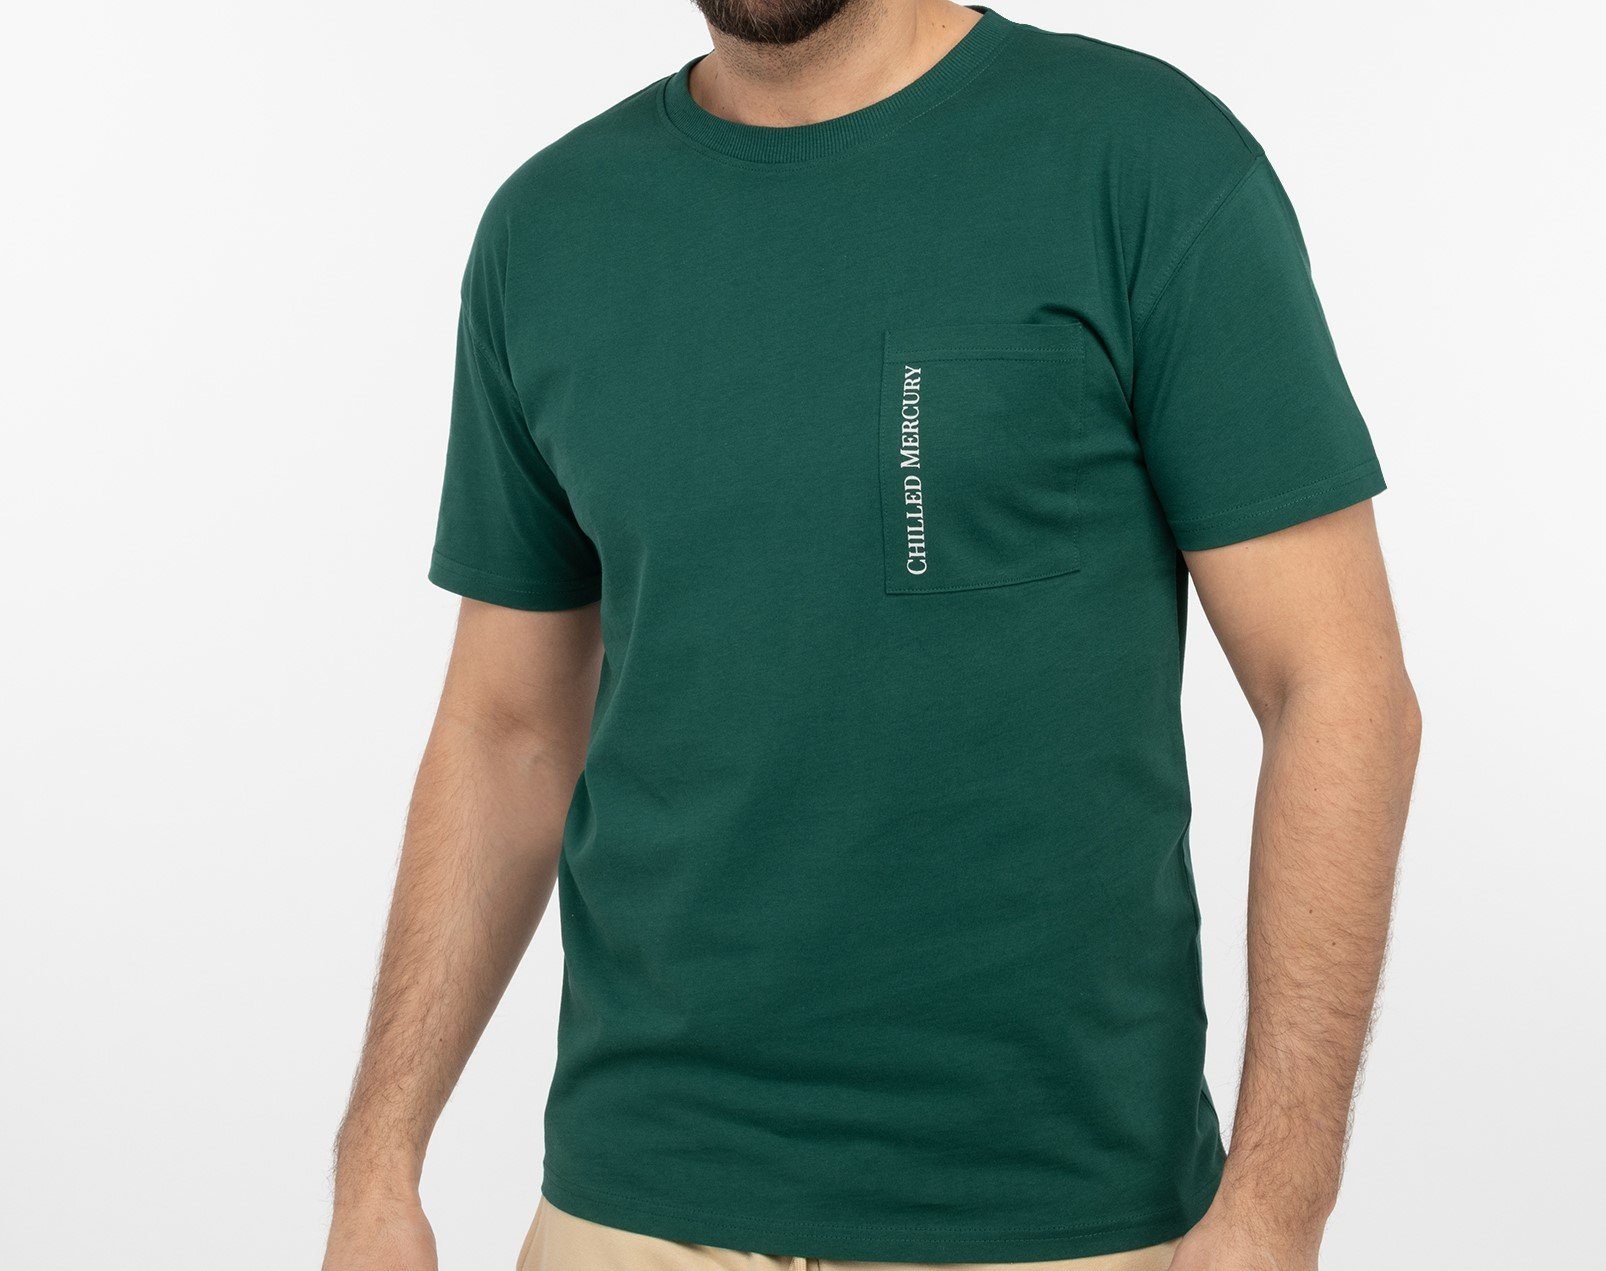 Baumwolle Brusttasche Chilled Grün Mercury Rundhals T-Shirt Freizeit mit Shirt/